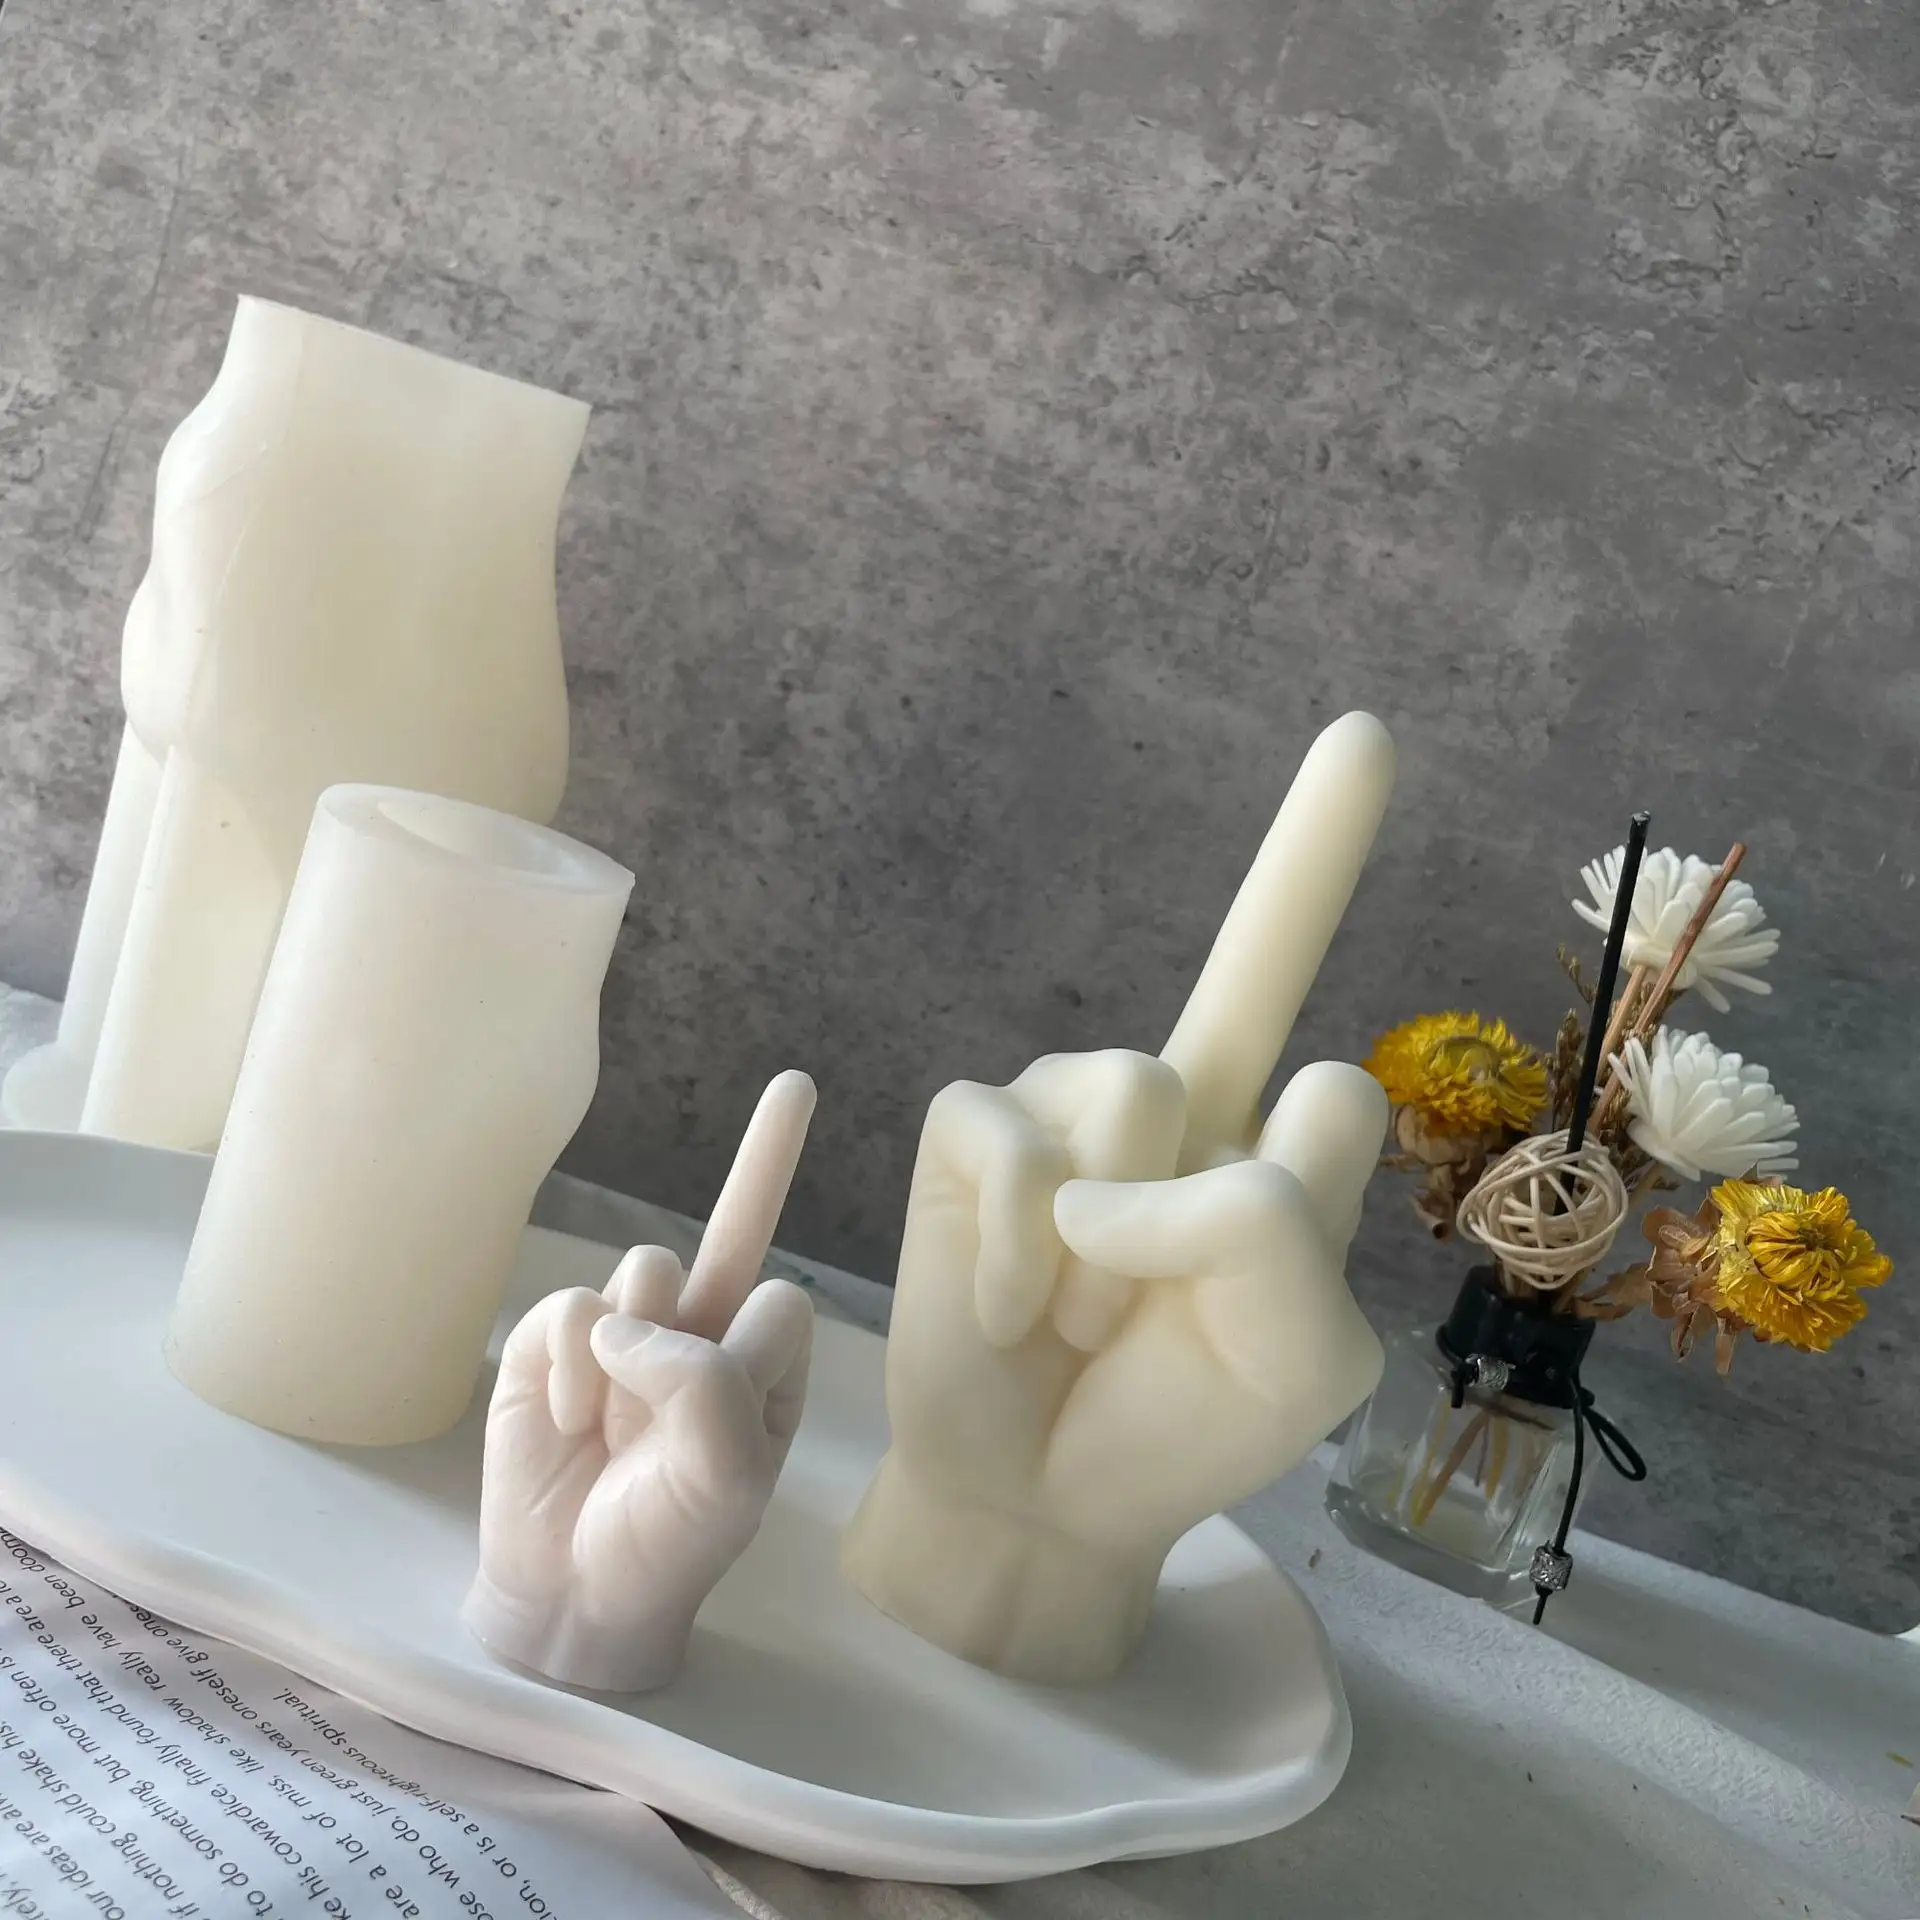 3D hand geformte Silikon form Geste Kerzen form Mittel finger förmige Harz gussform für Kerzen-und Back herstellung